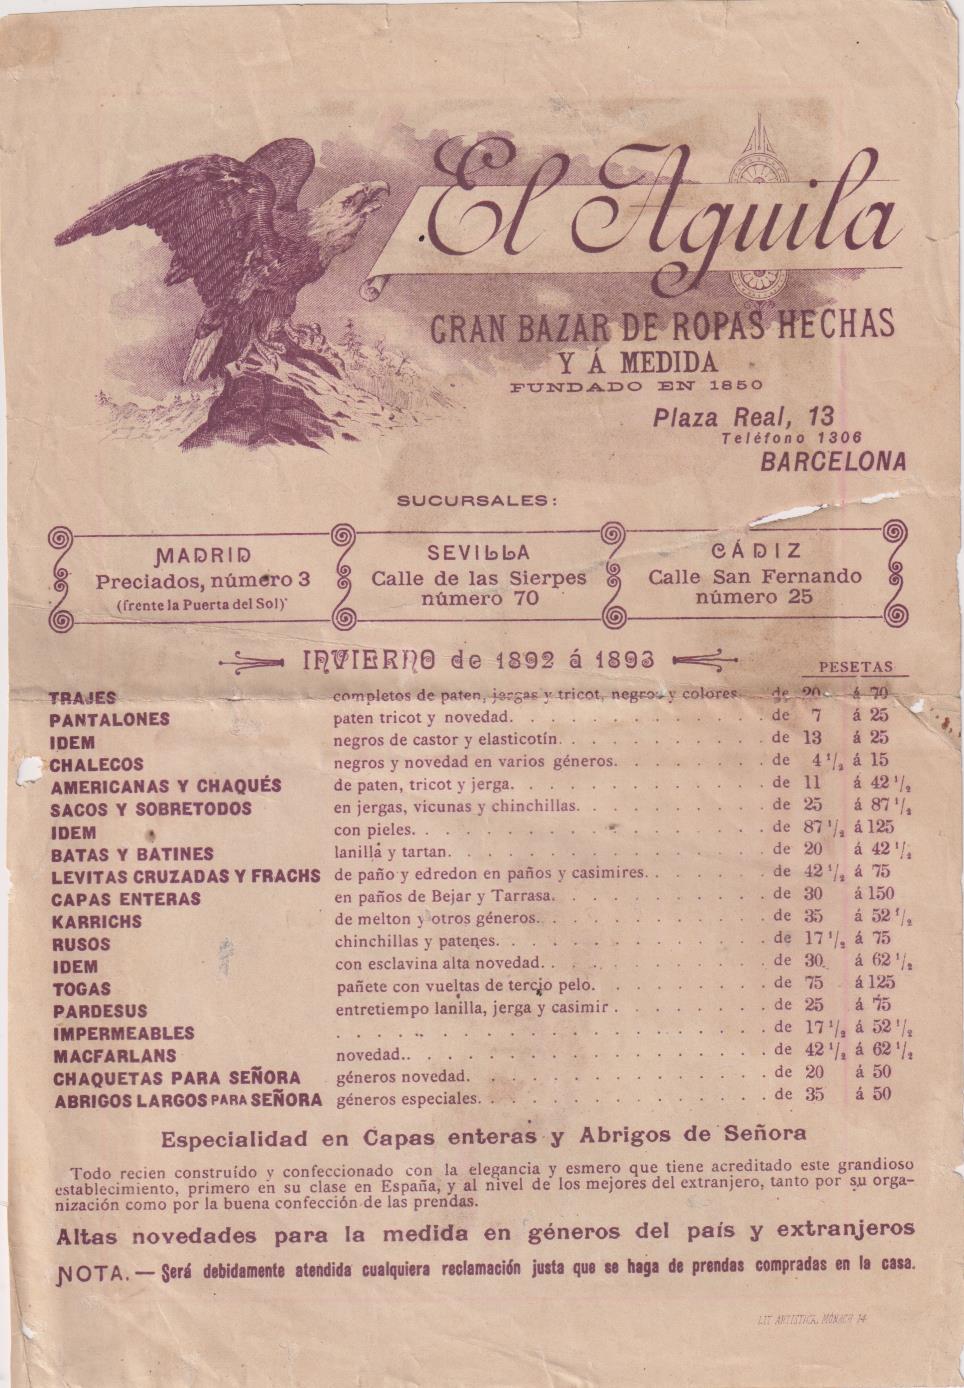 Publicidad (23,5x16) El Águila. Gran Bazar de Ropas Hechas y a medida. 1892-1893